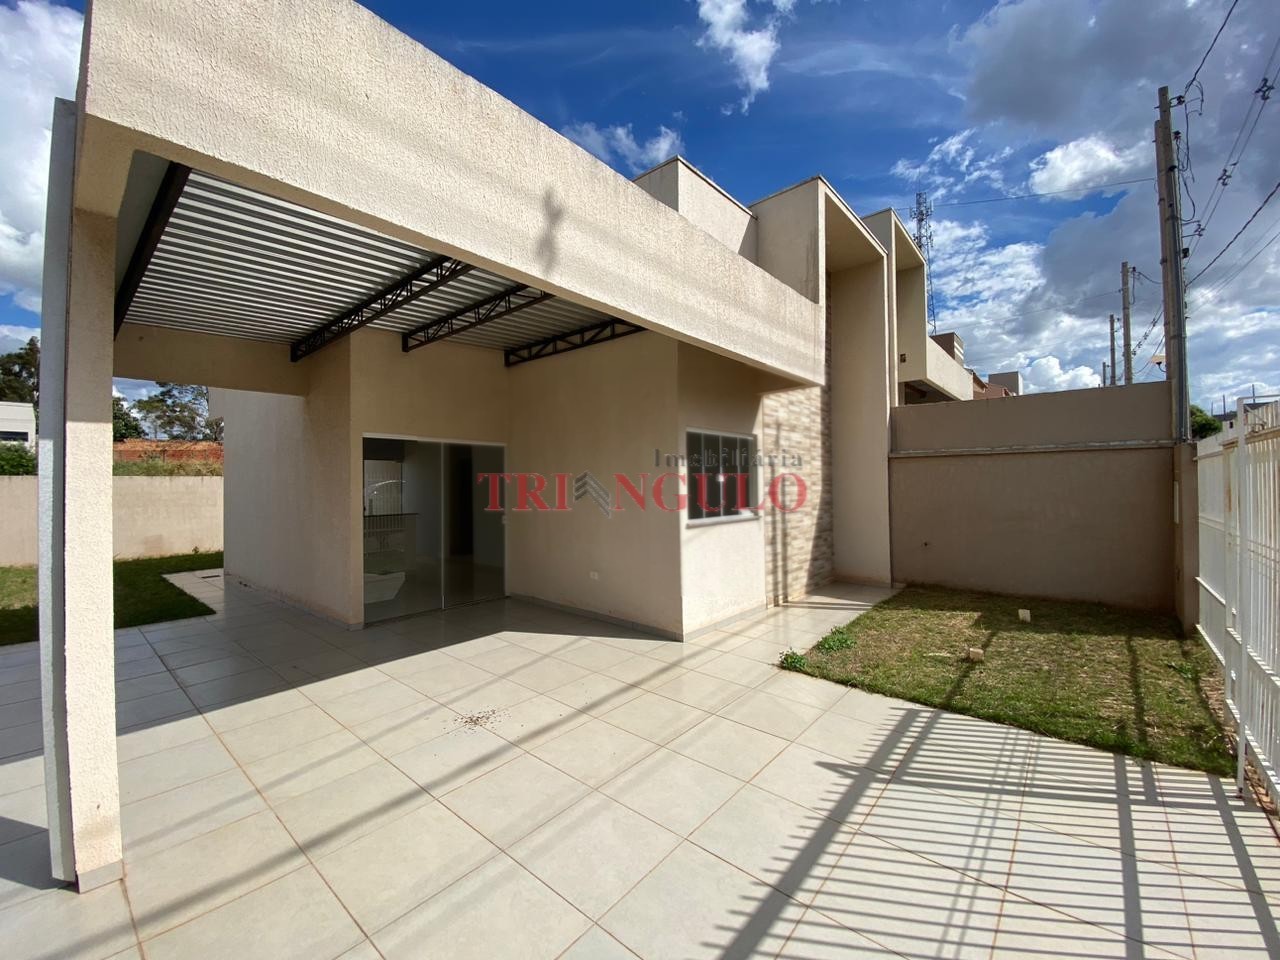 Casa para venda no Parque Residencial Viena 03 em Umuarama com 186,9m² por R$ 220.000,00